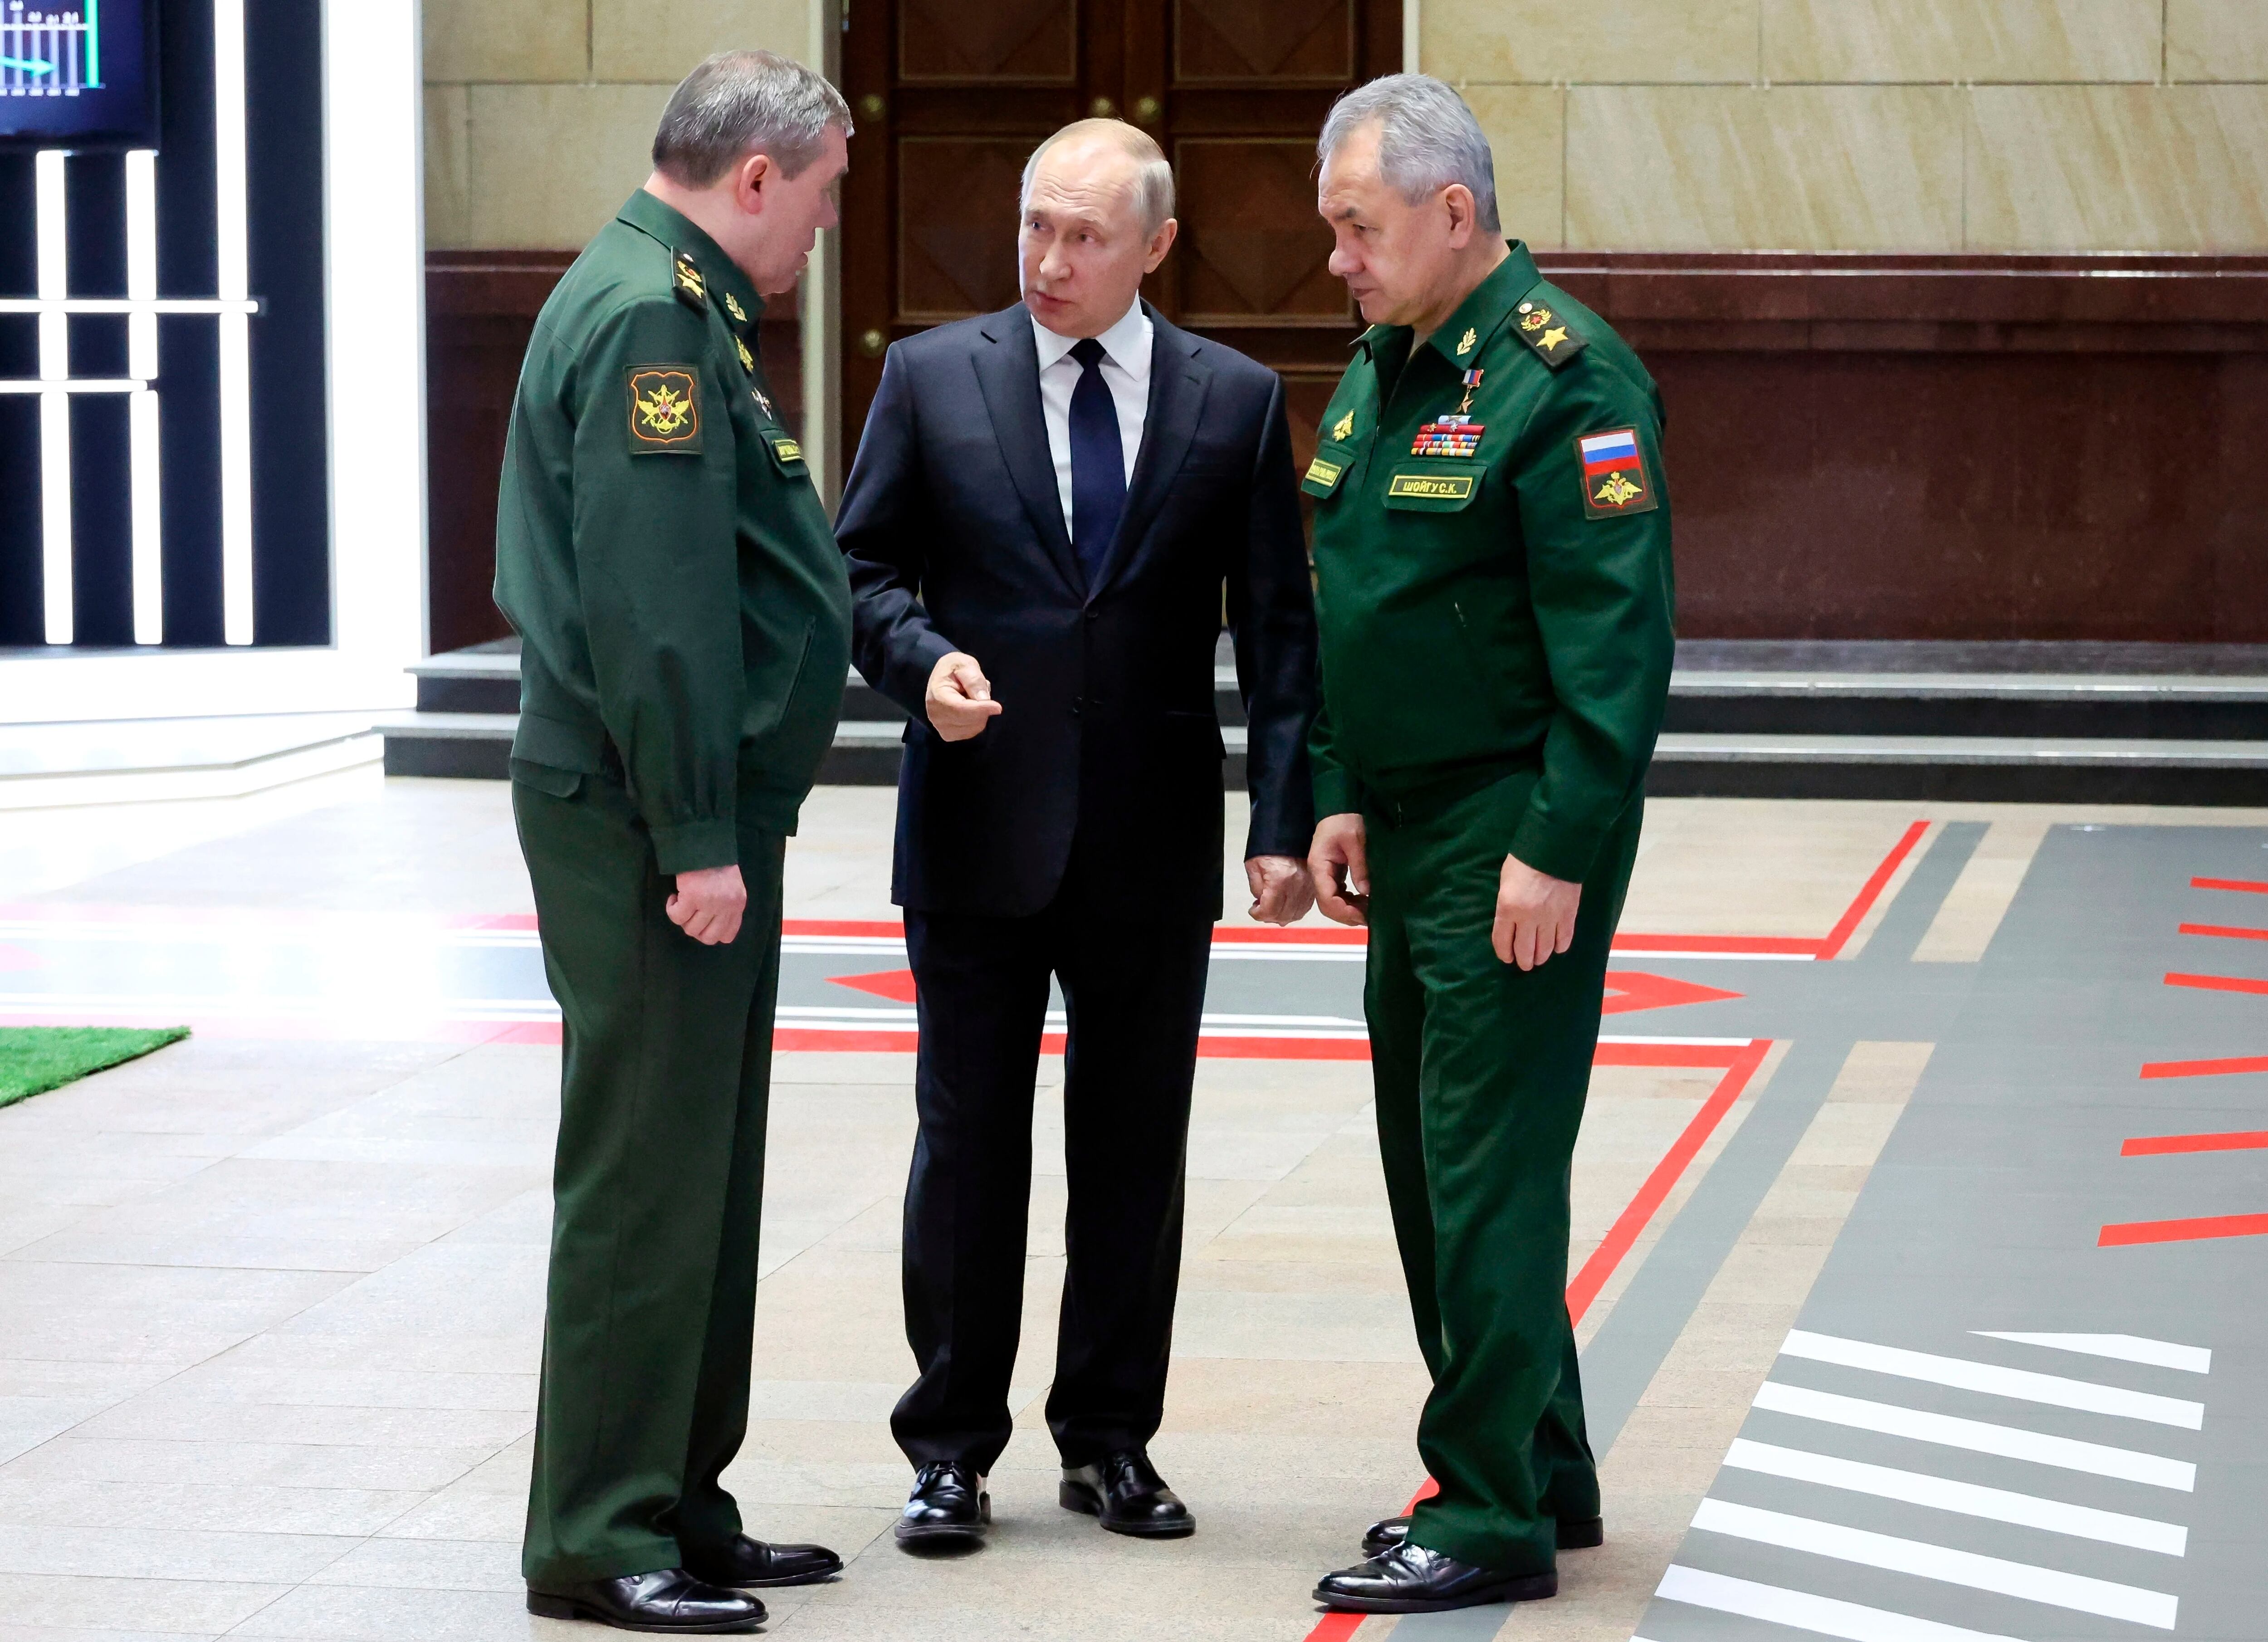 Putin junto al jefe del Estado Mayor General, el general Valery Gerasimov y al ministro de Defensa ruso, Sergei Shoigu. Son los aparentes ganadores de esta puja de poder en Rusia.(Mikhail Kuravlev, Sputnik, foto de Pool del Kremlin vía AP)